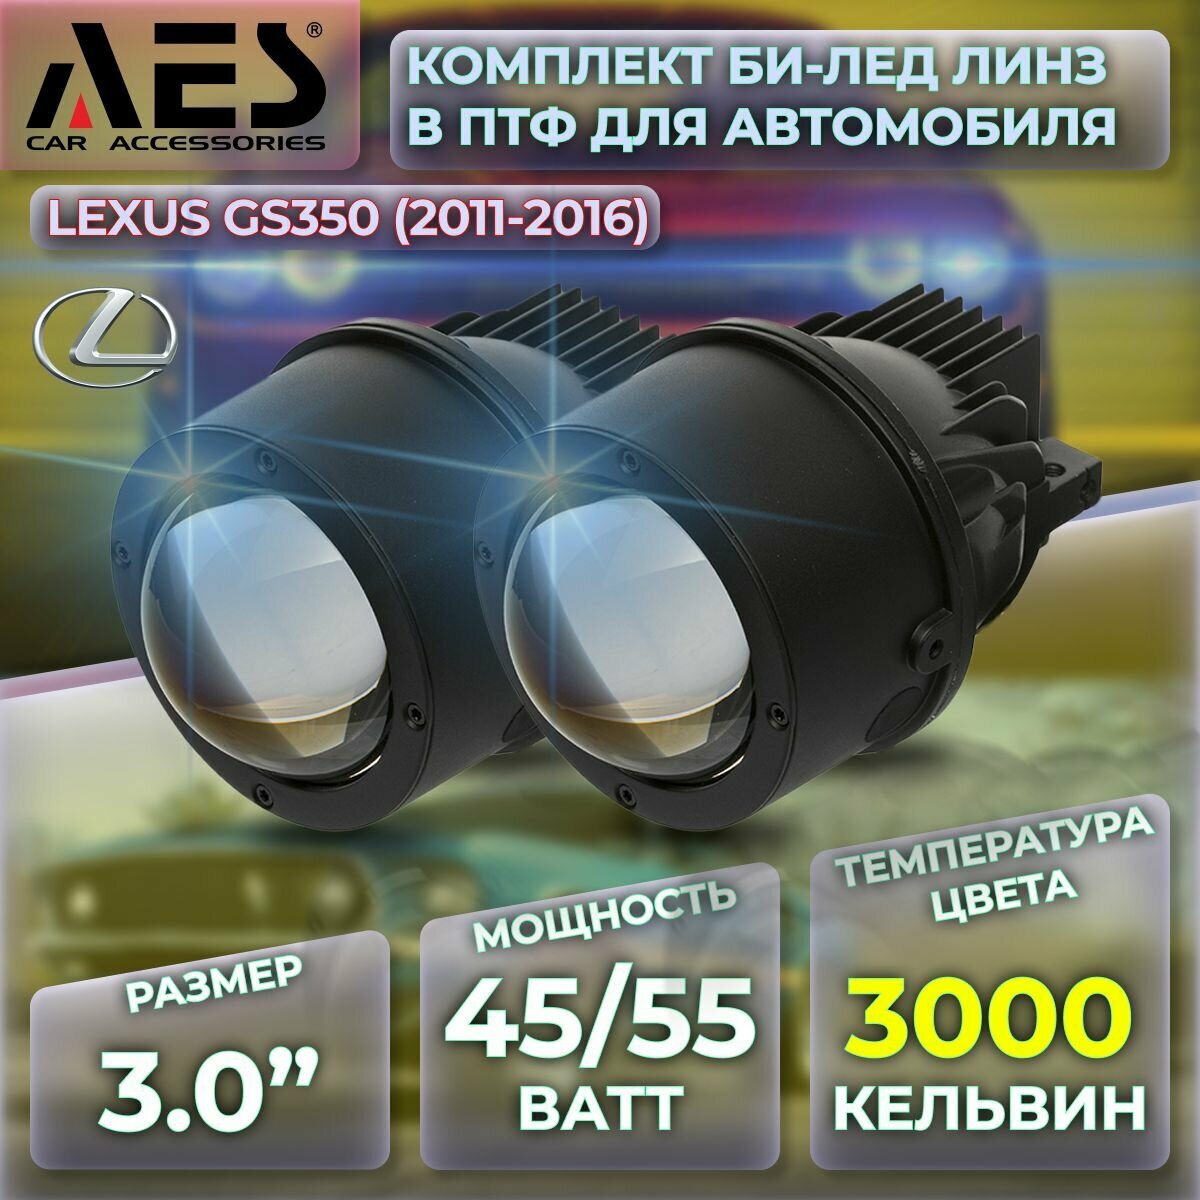 Комплект Би-лед линз в ПТФ для Lexus GS350 (2011-2016) Q8 Foglight Bi-LED Laser 3000K (2 модуля 2 кронштейна)